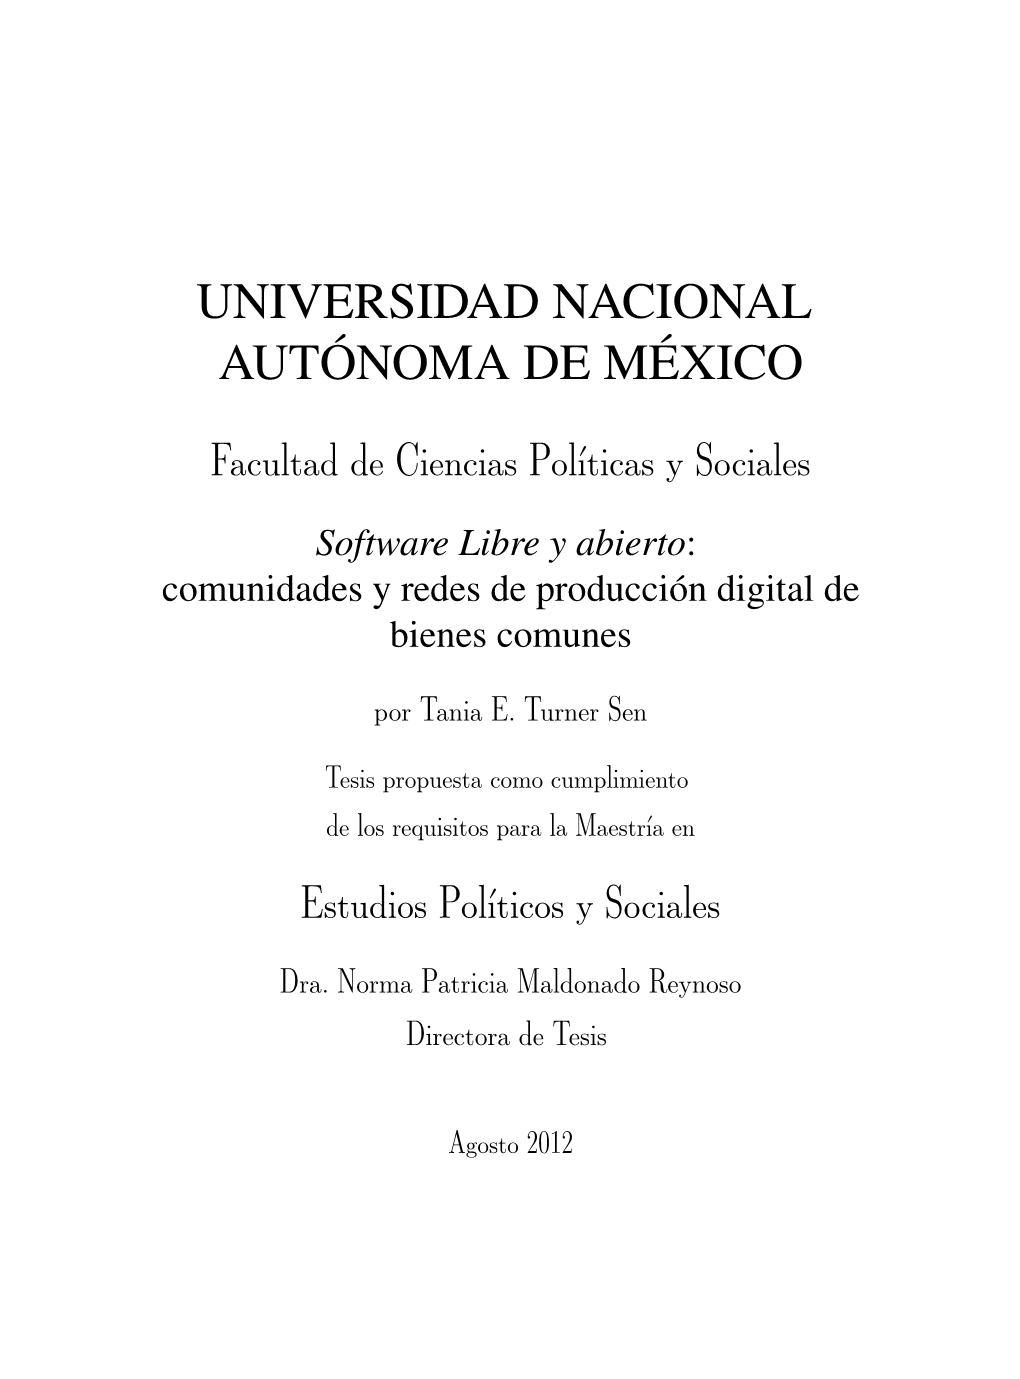 Software Libre Y Abierto: Comunidades Y Redes De Producción Digital De Bienes Comunes